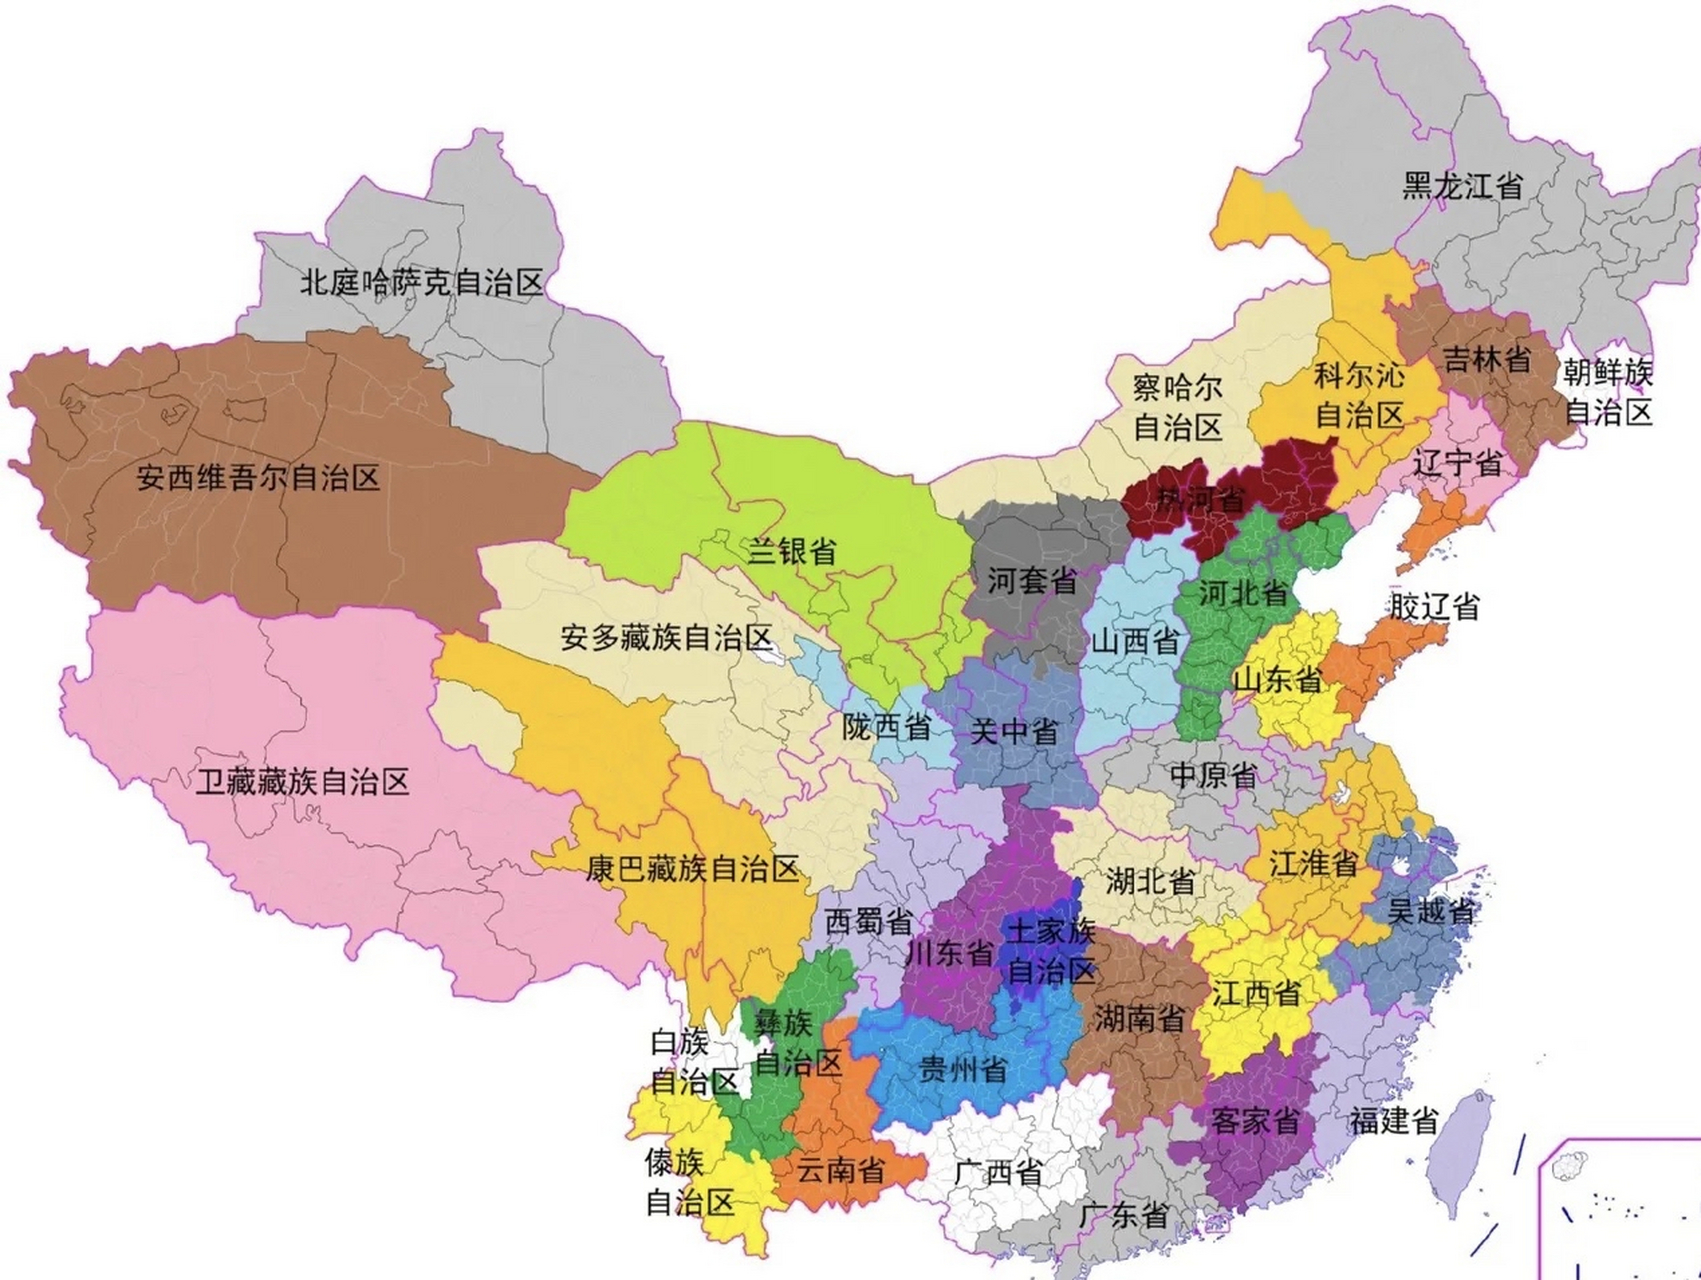 如果中国按照人文地理方言区进行行政区域划分,会有哪些有趣的现象